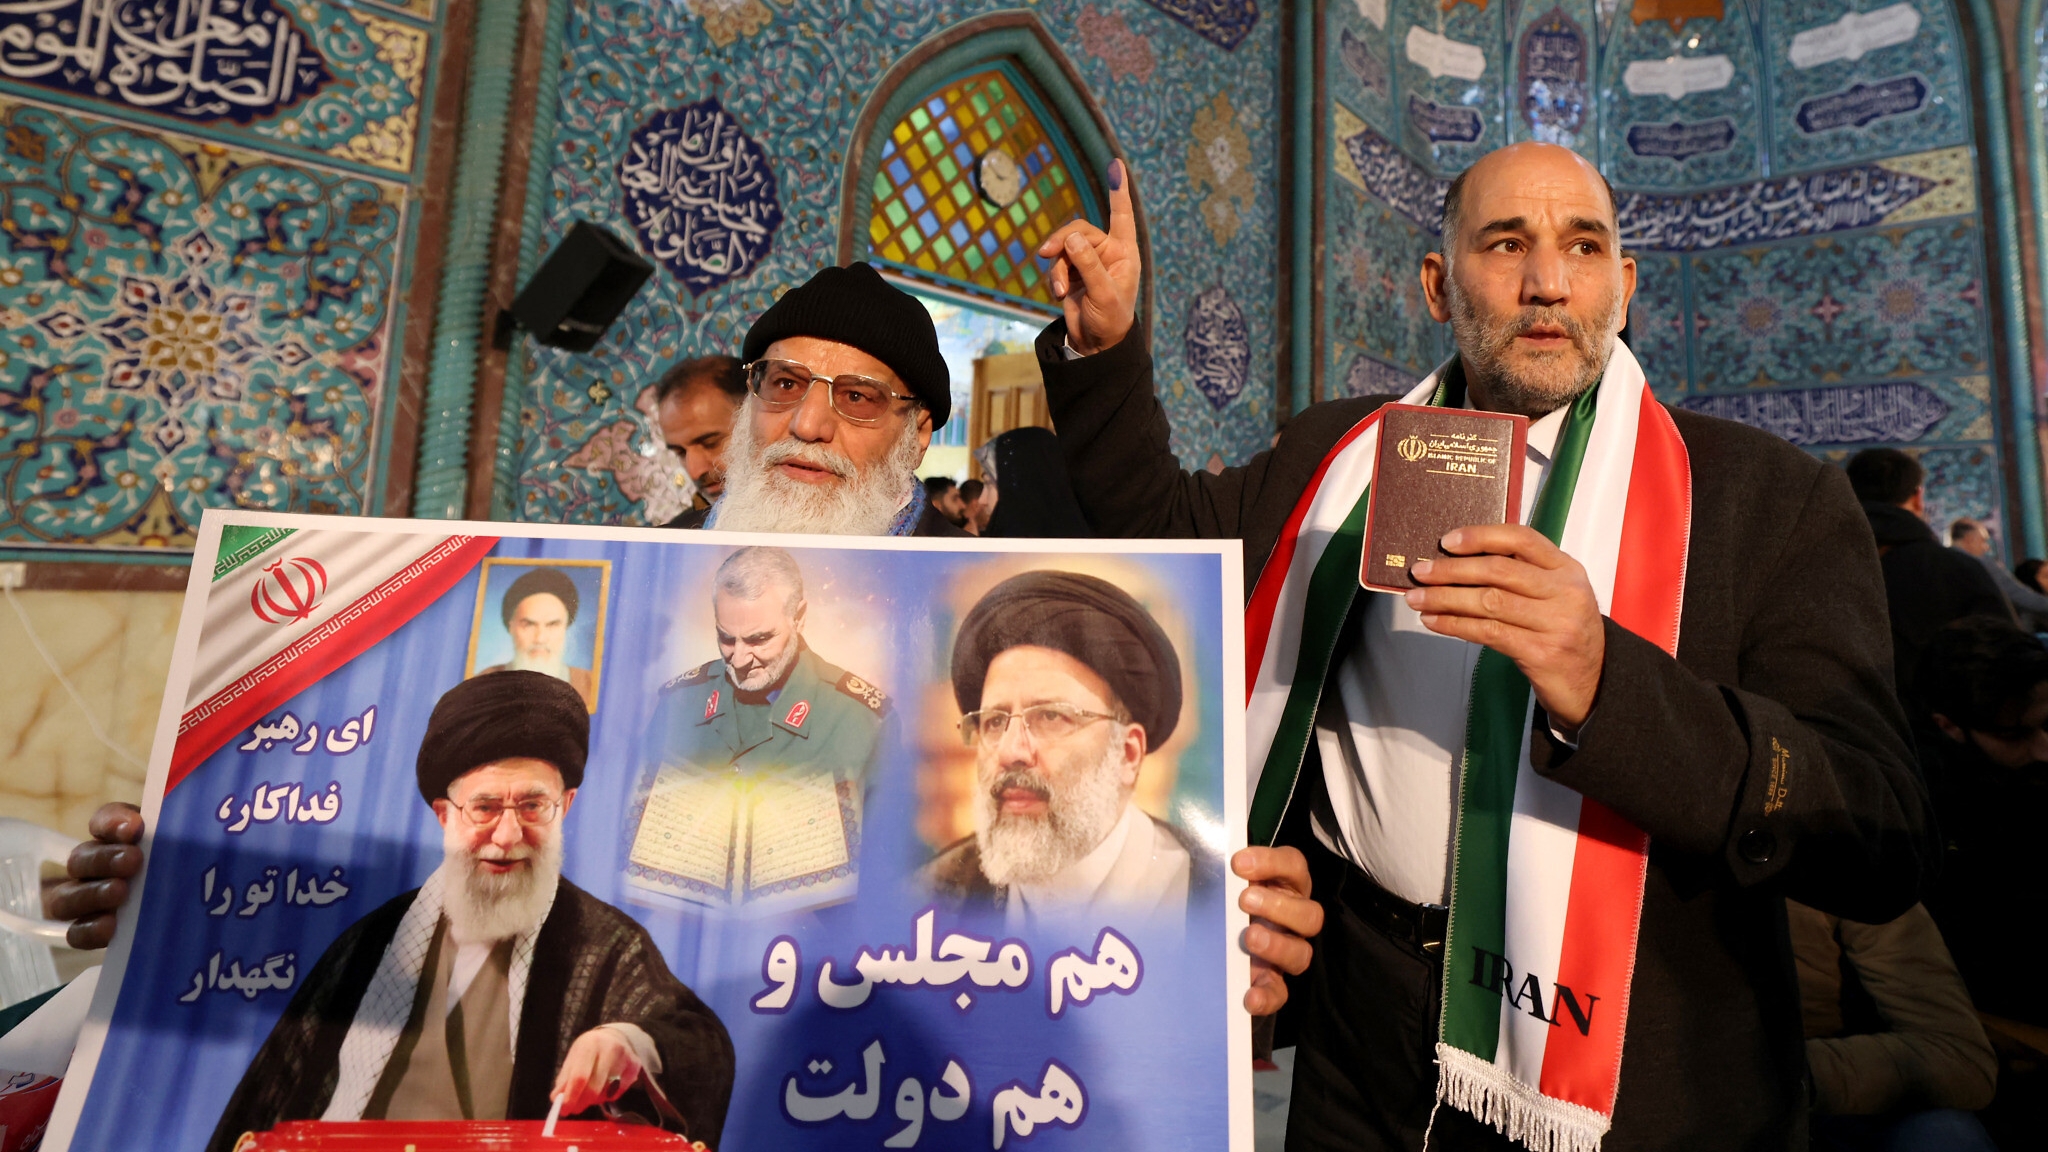 يسود على نطاق واسع الاعتقاد أن الانتخابات الأخيرة التي يجريها النظام الإيراني هي مجرد انتخابات صورية